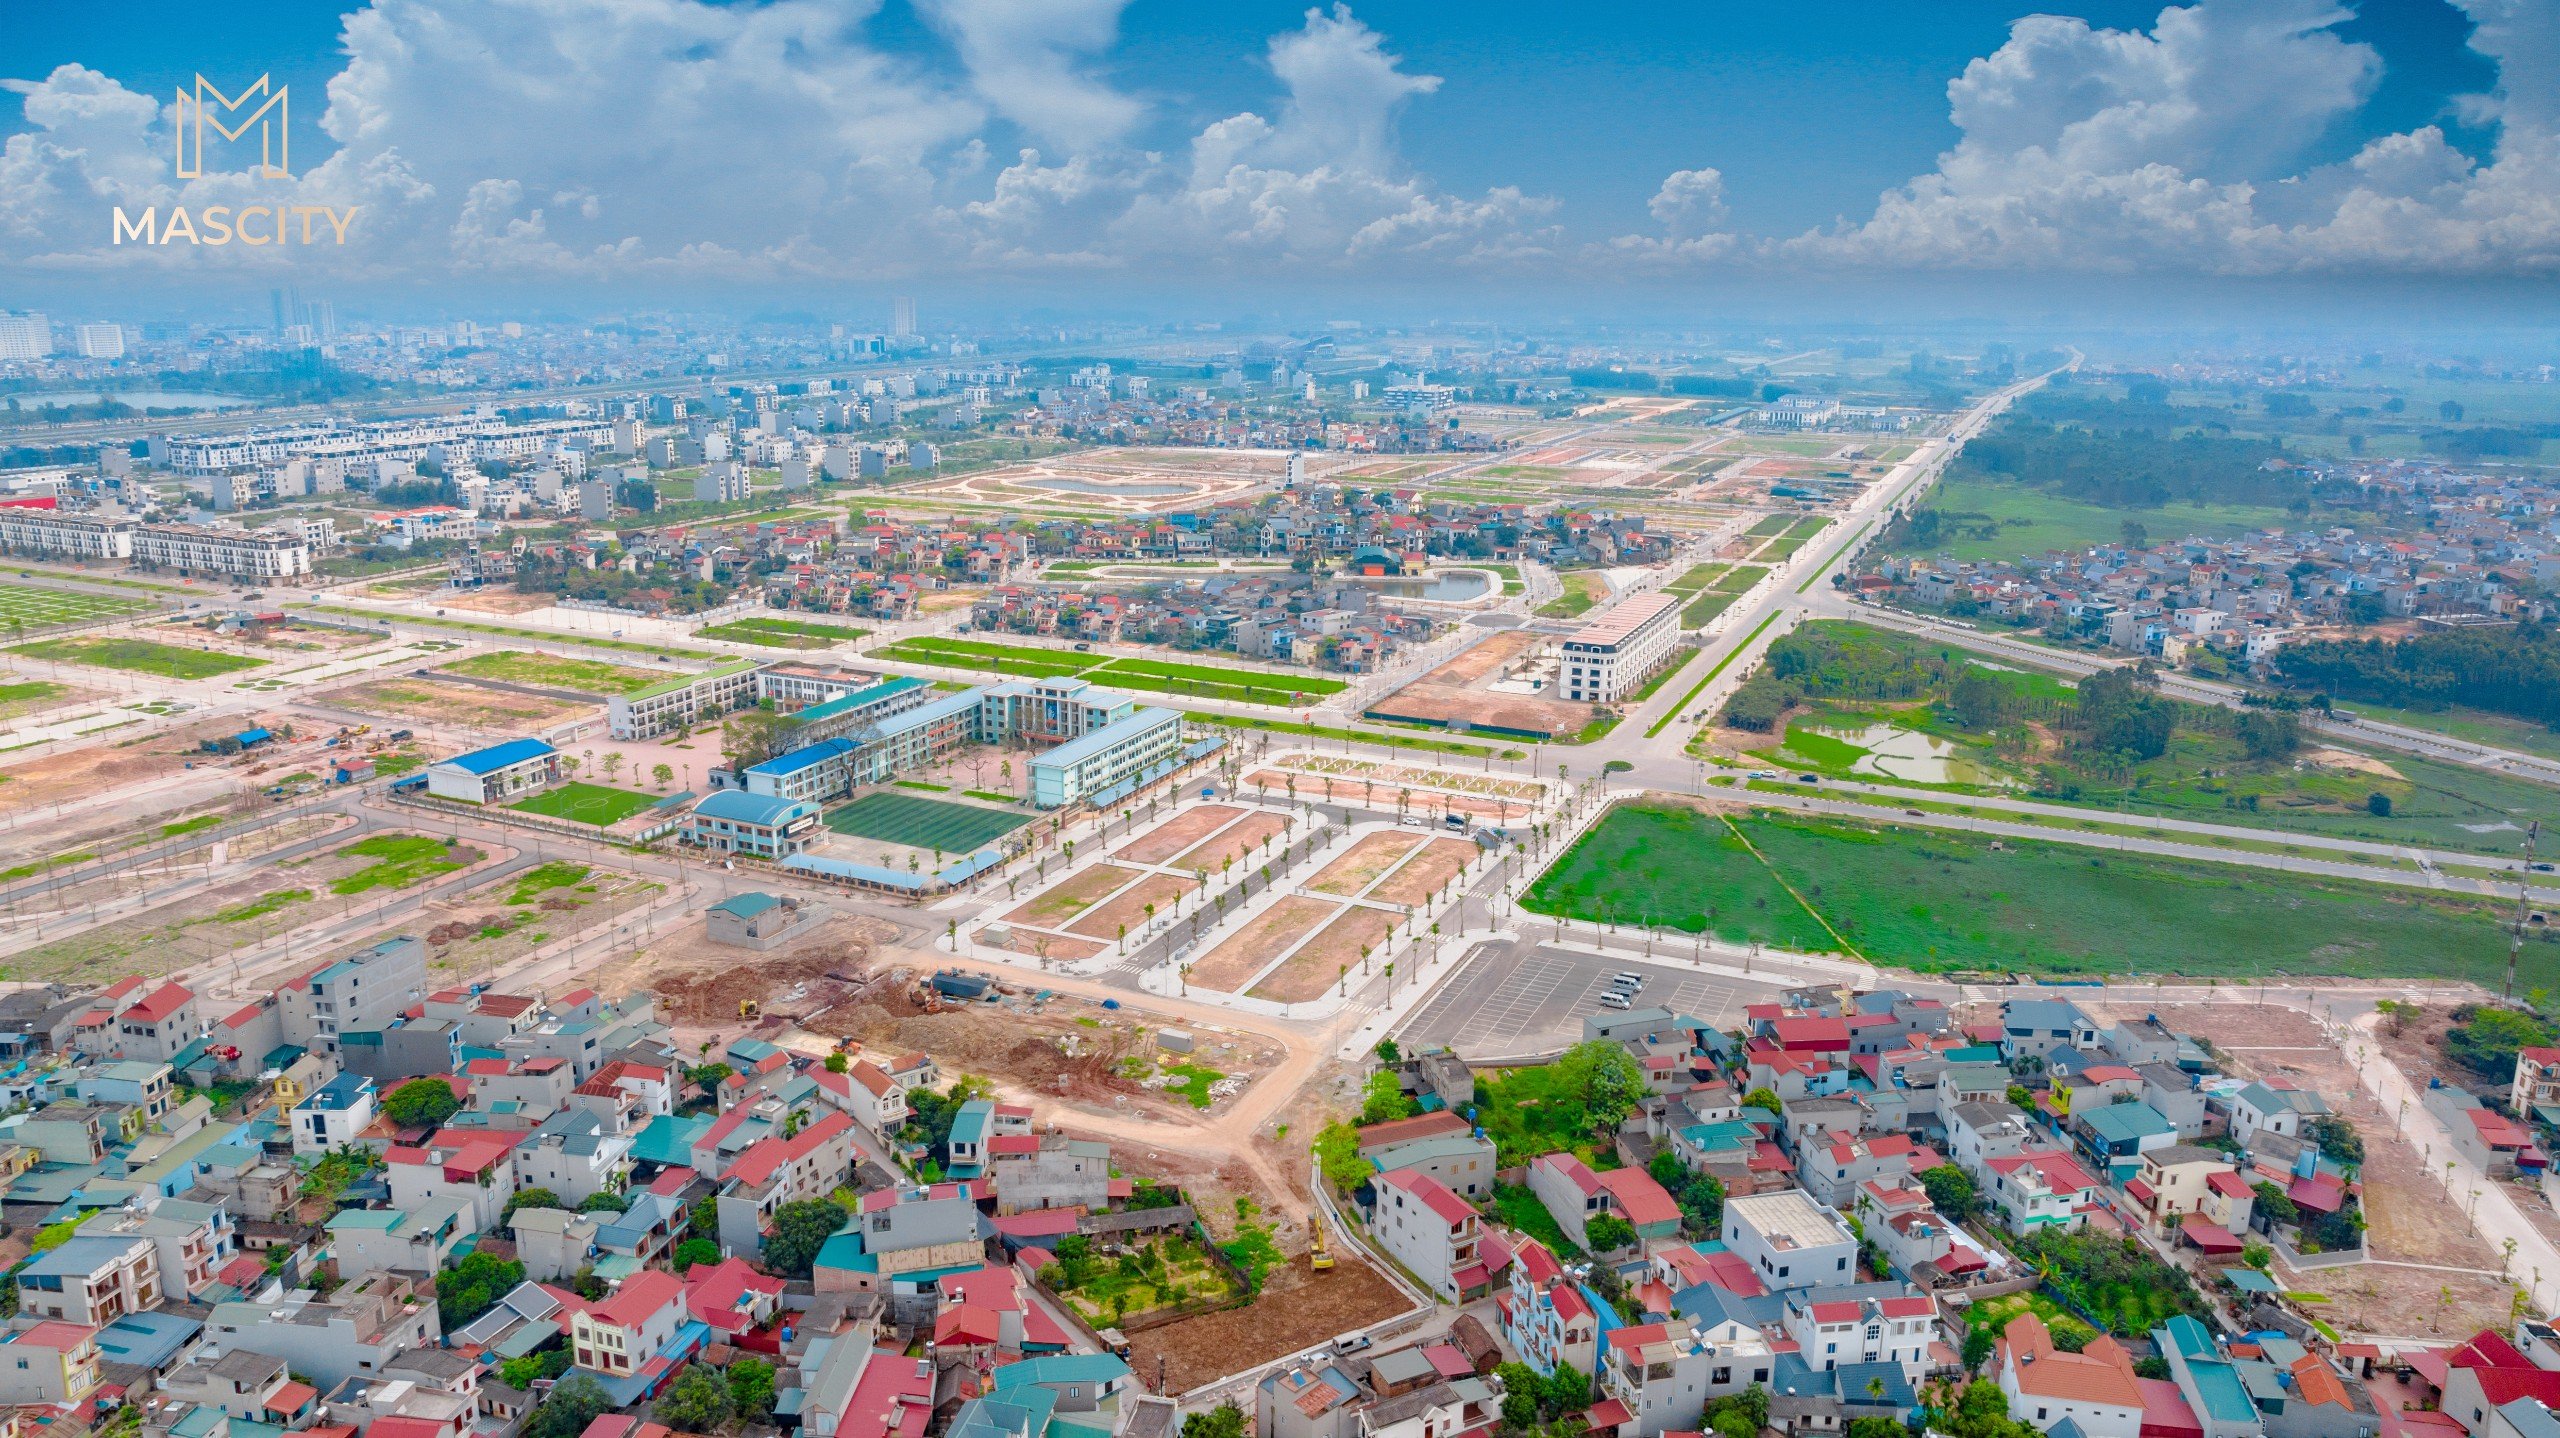 Bán đất nền trung tâm thành phố Bắc Giang, vị trí đắc địa, CK 6%, HTLS 0% đến 70% trong 12 tháng 7